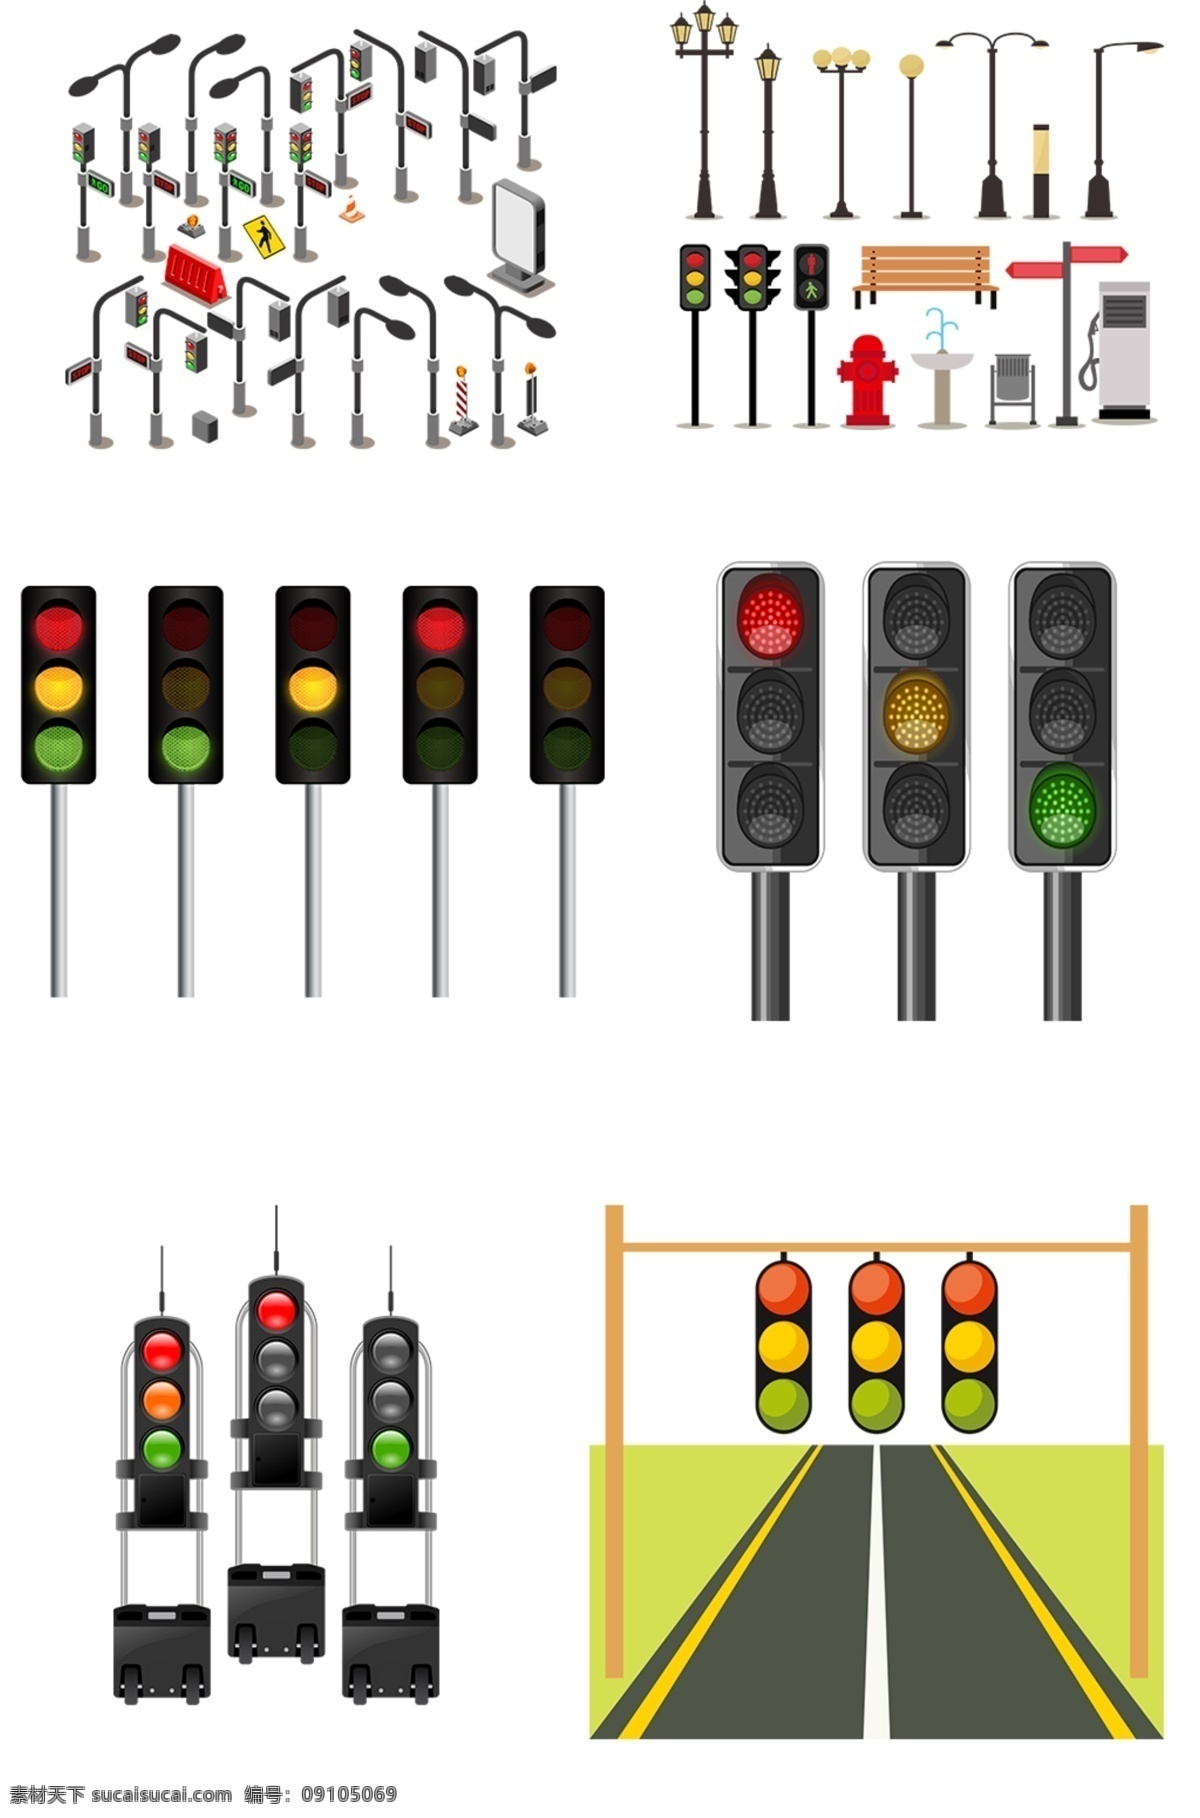 红绿灯 素材图片 安全标志 红绿灯模板 禁止 交通 卡通红绿灯 红绿灯大全 红绿灯素材 红绿灯元素 红绿灯集合 红绿灯集锦 元素素材